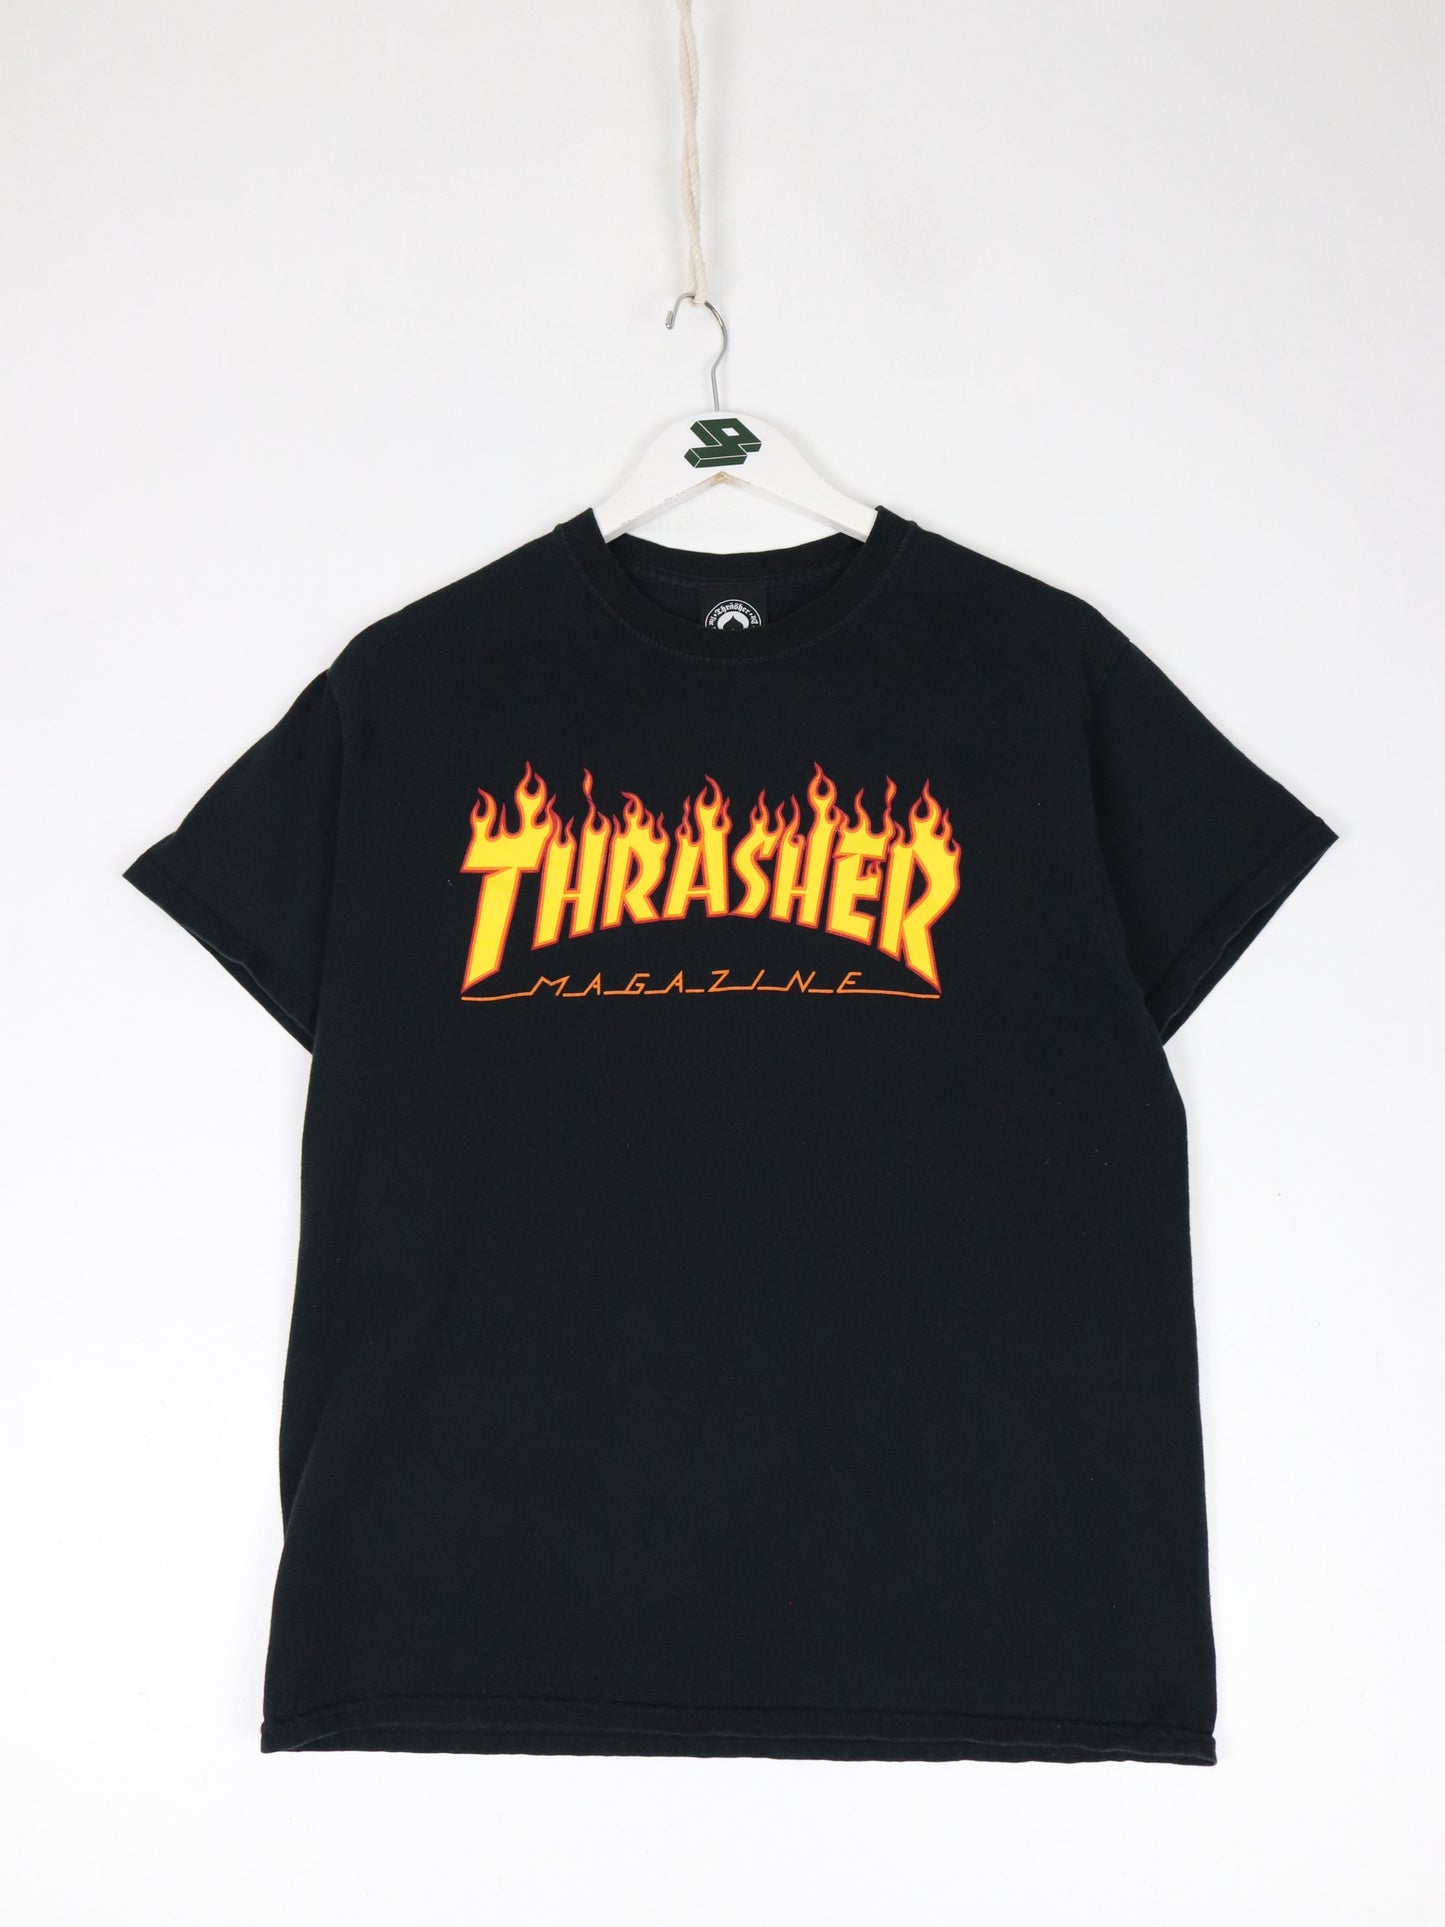 Thrasher T Shirt Mens Medium Black Skater Skatebording